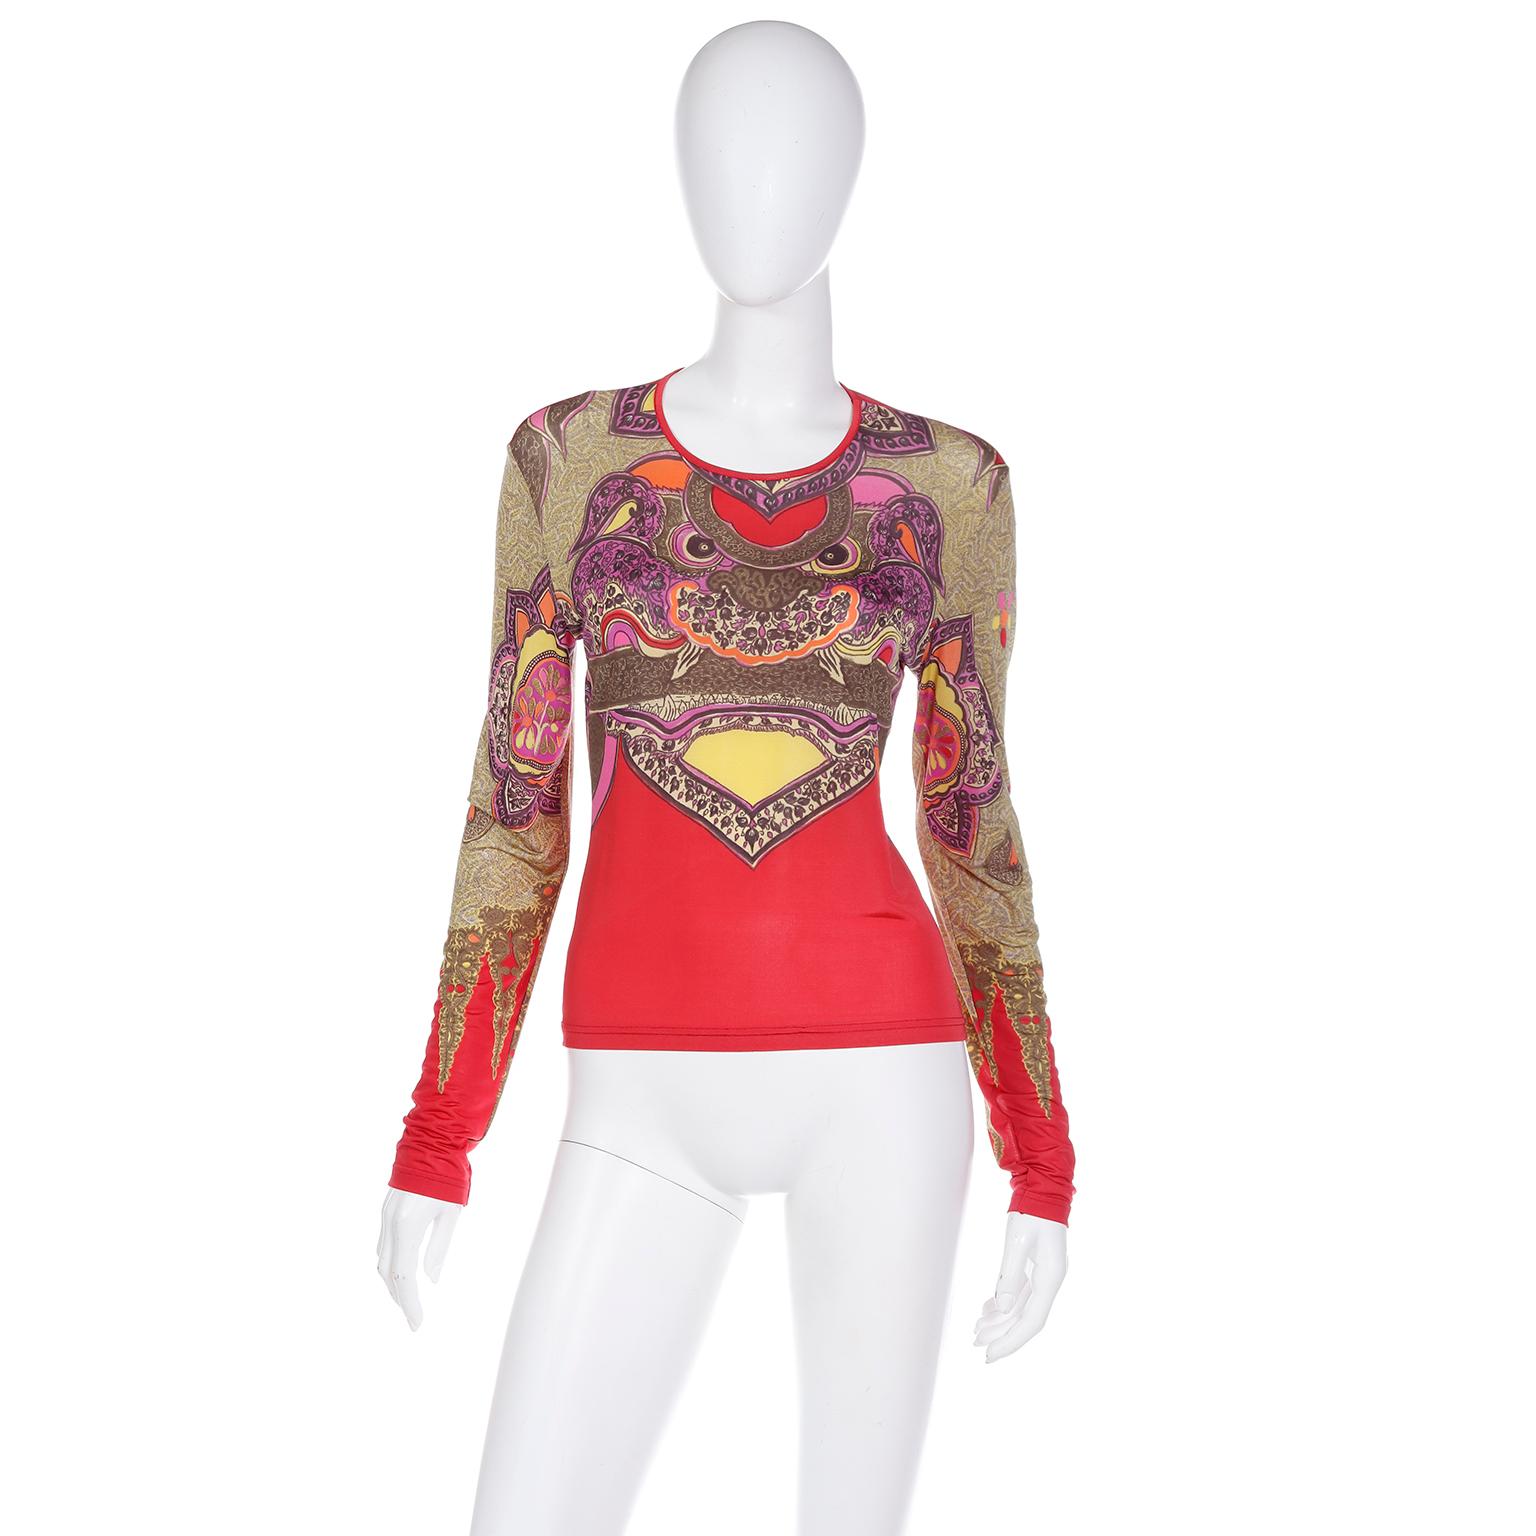 Ce haut en tricot extensible Christian Lacroix Bazar des années 1990 présente un imprimé de dragon chinois coloré dans différentes nuances de violet, rouge, vert, jaune, rose, orange et gris vert. Le haut a des manches longues de type tatouage,